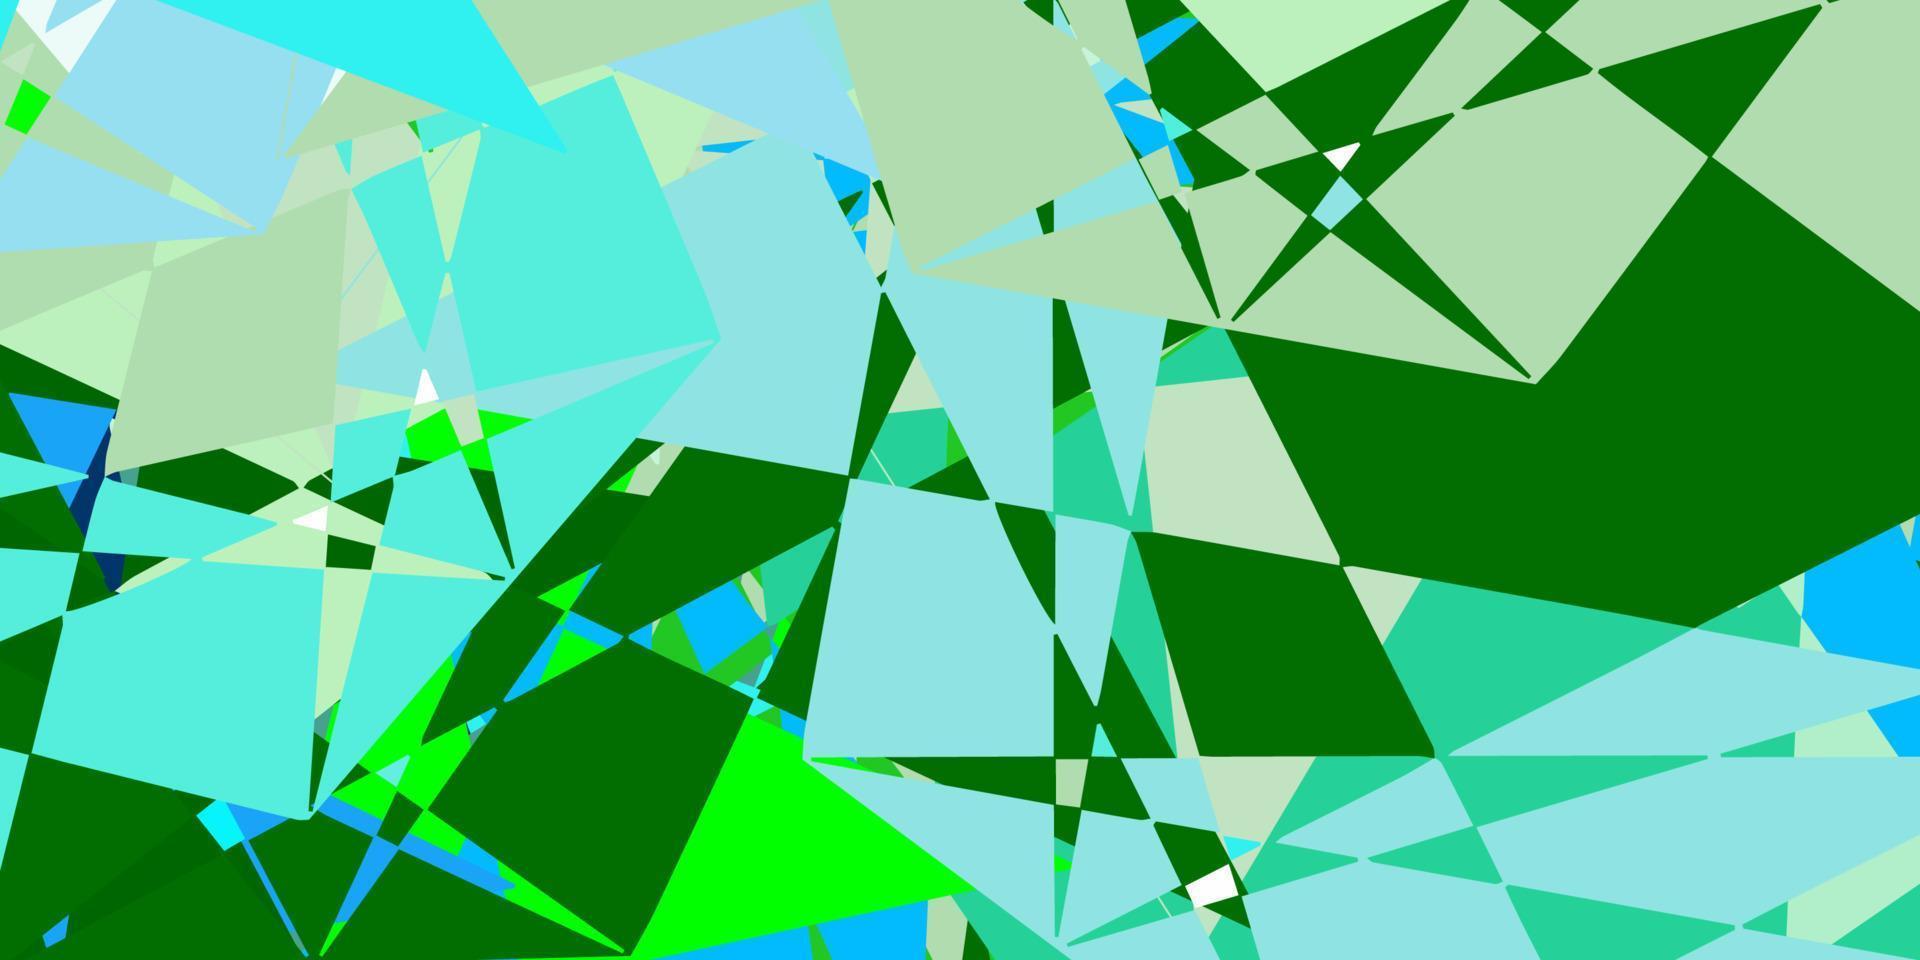 sfondo vettoriale multicolore chiaro con forme poligonali.